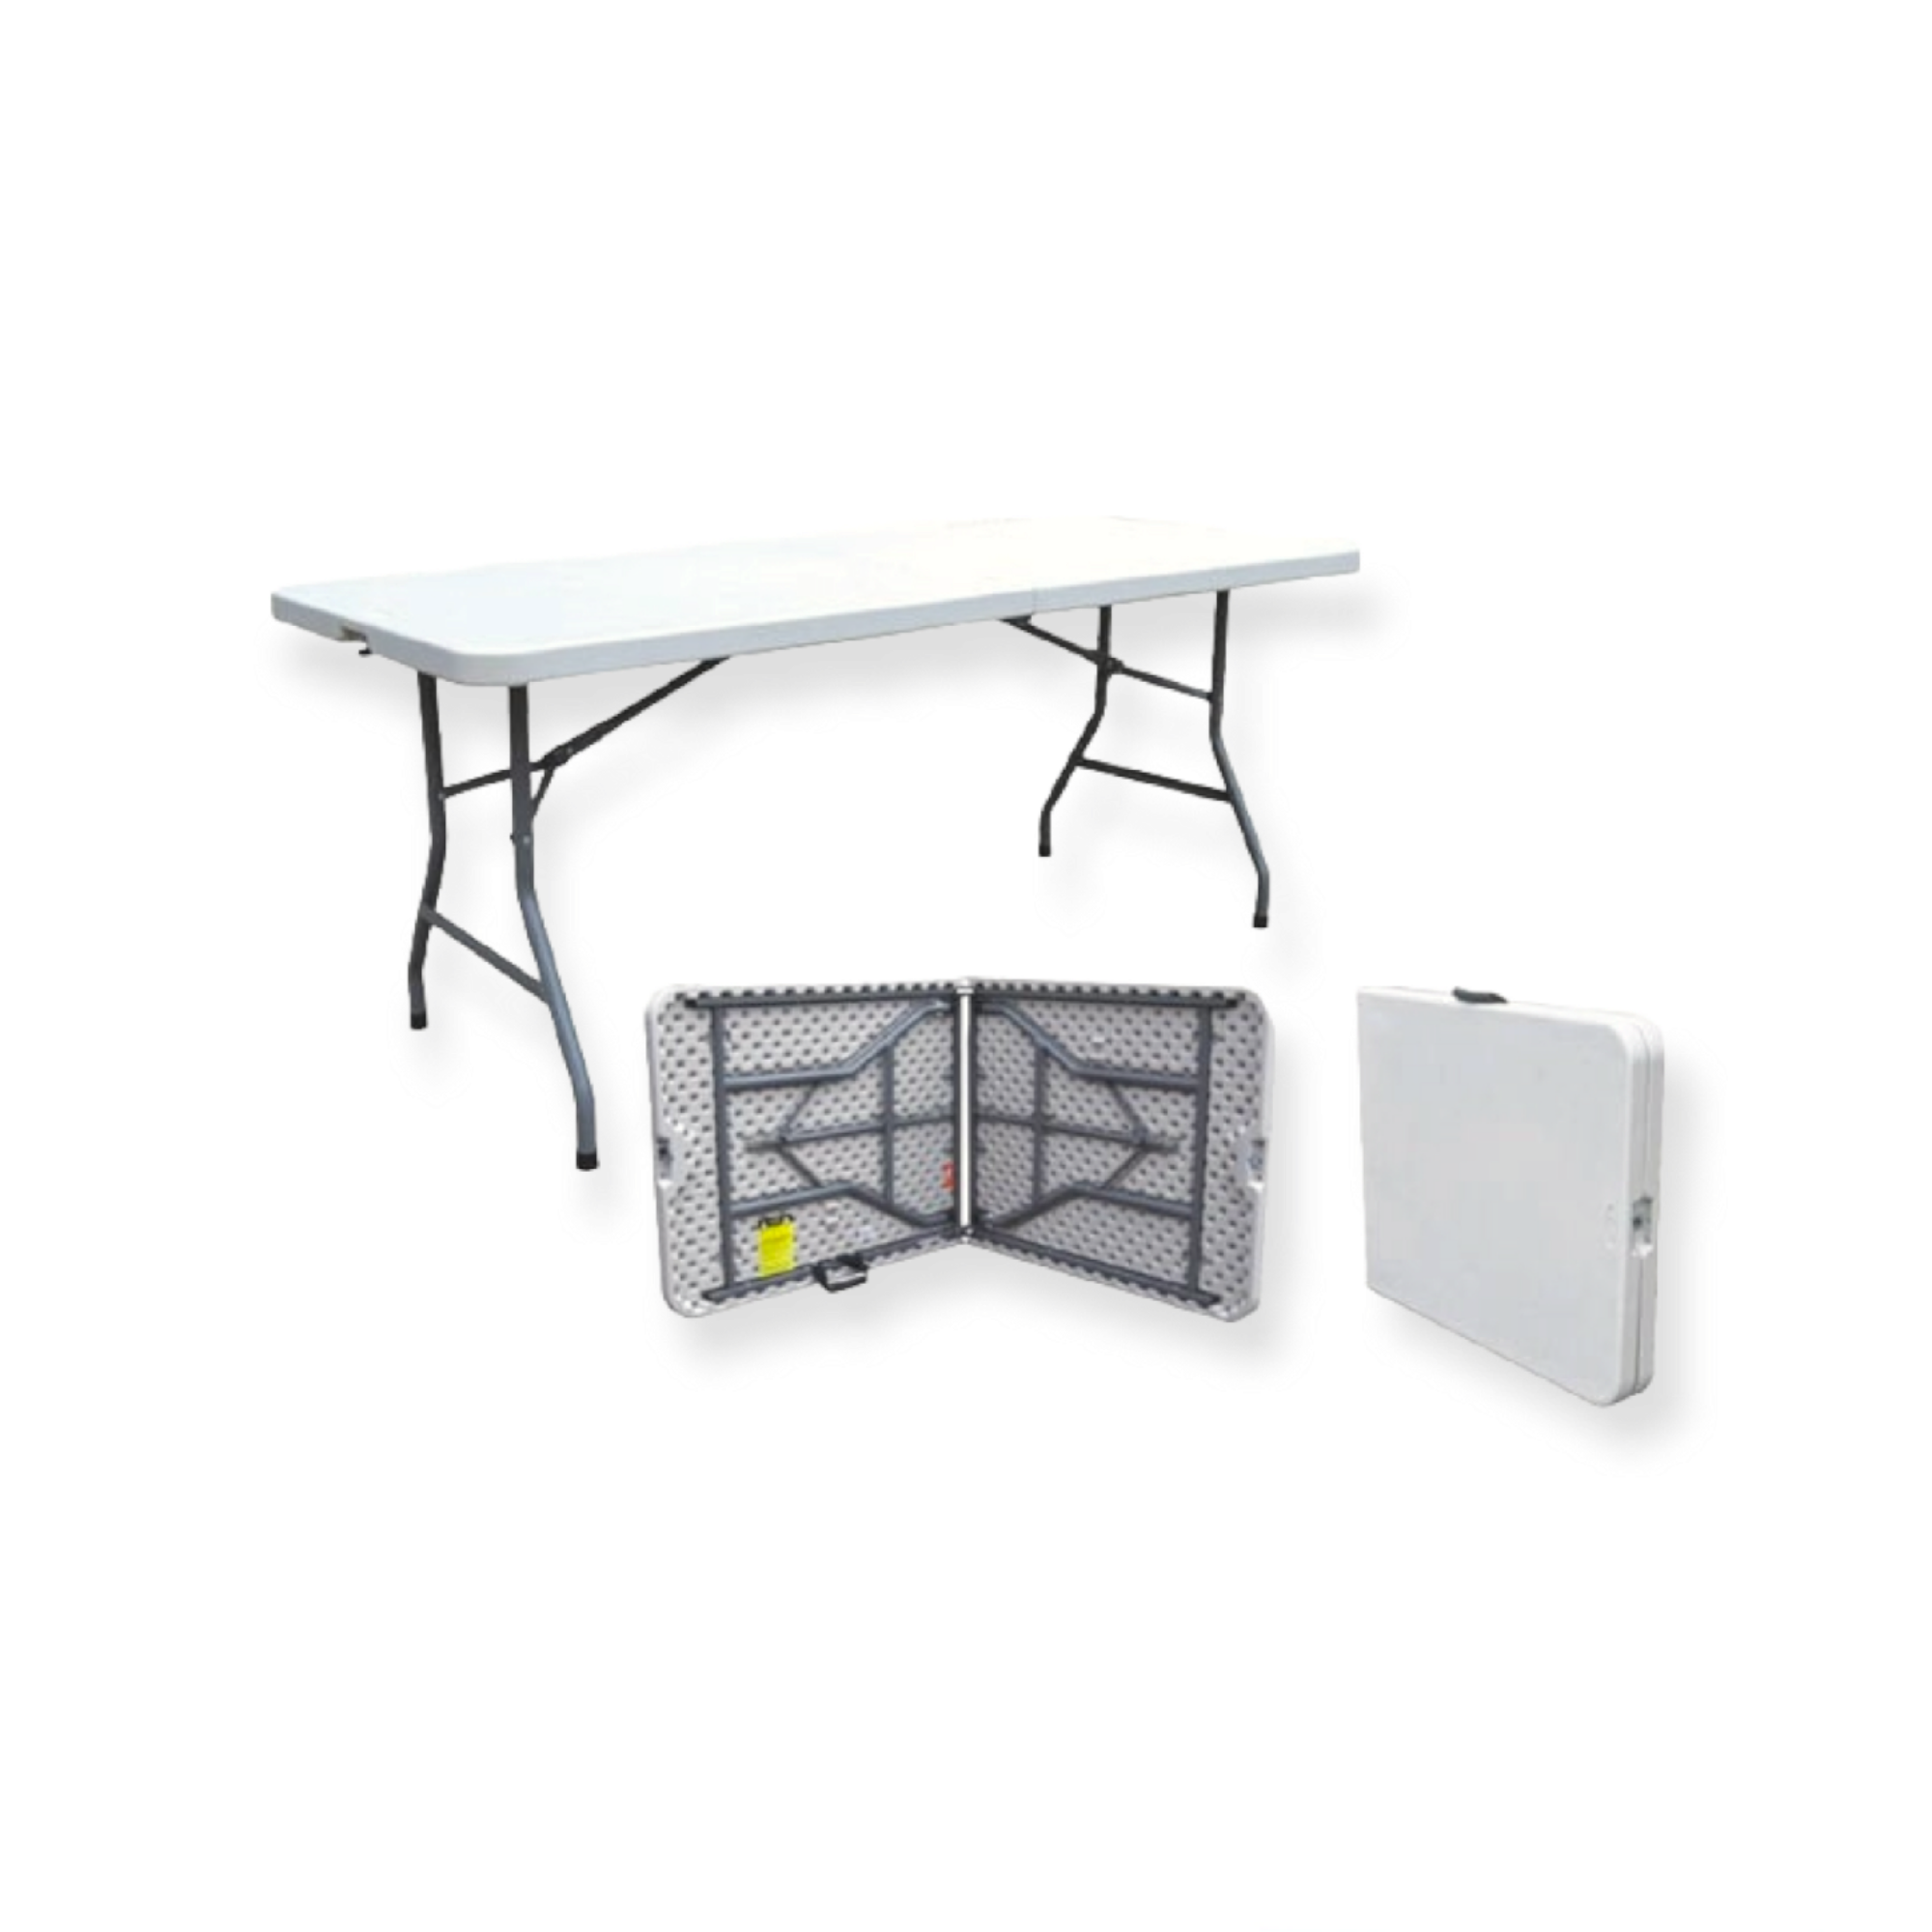 1.5m Folding Trestle Plastic Table 5ft